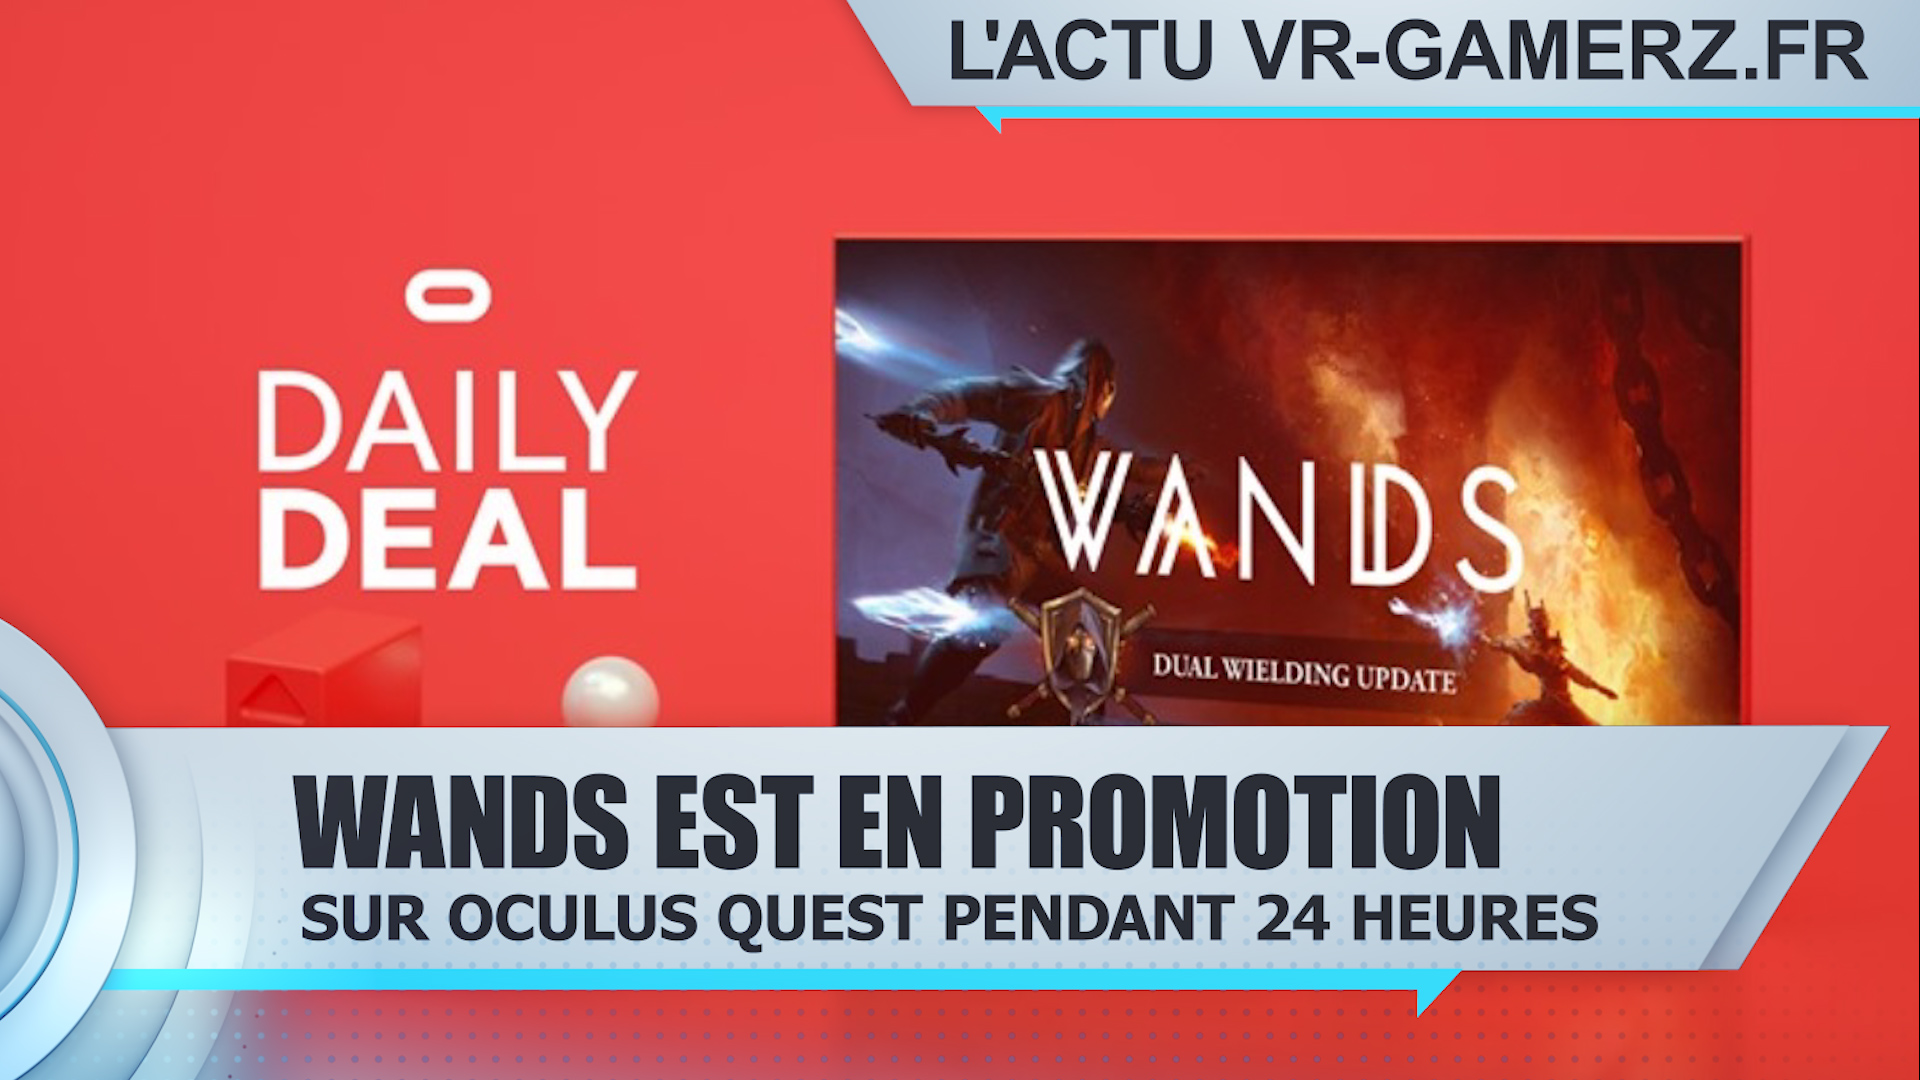 Wands est en promotion sur Oculus quest